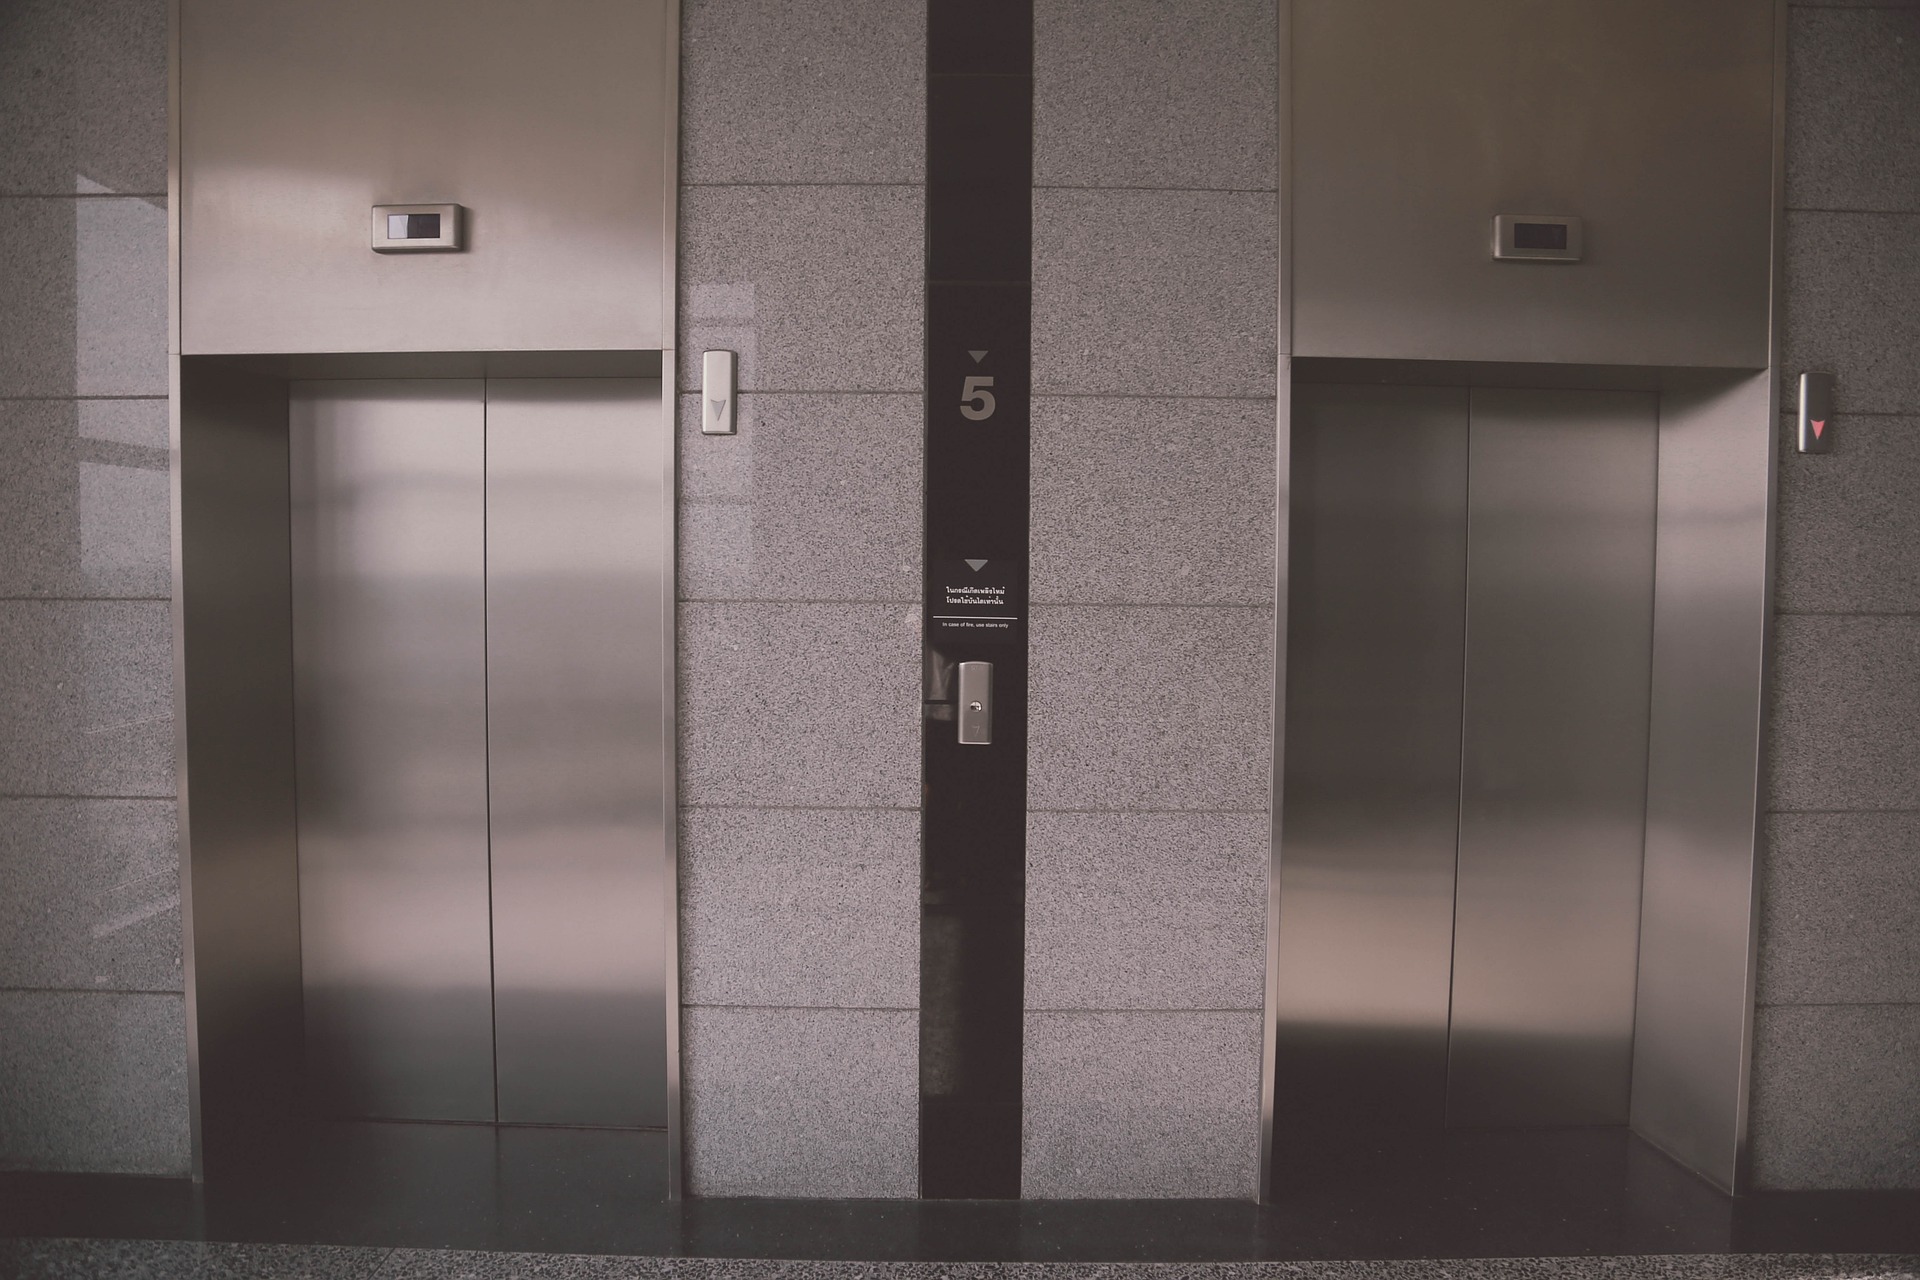 Lavori agli ascensori dell’ospedale del Valdarno, al via il secondo step